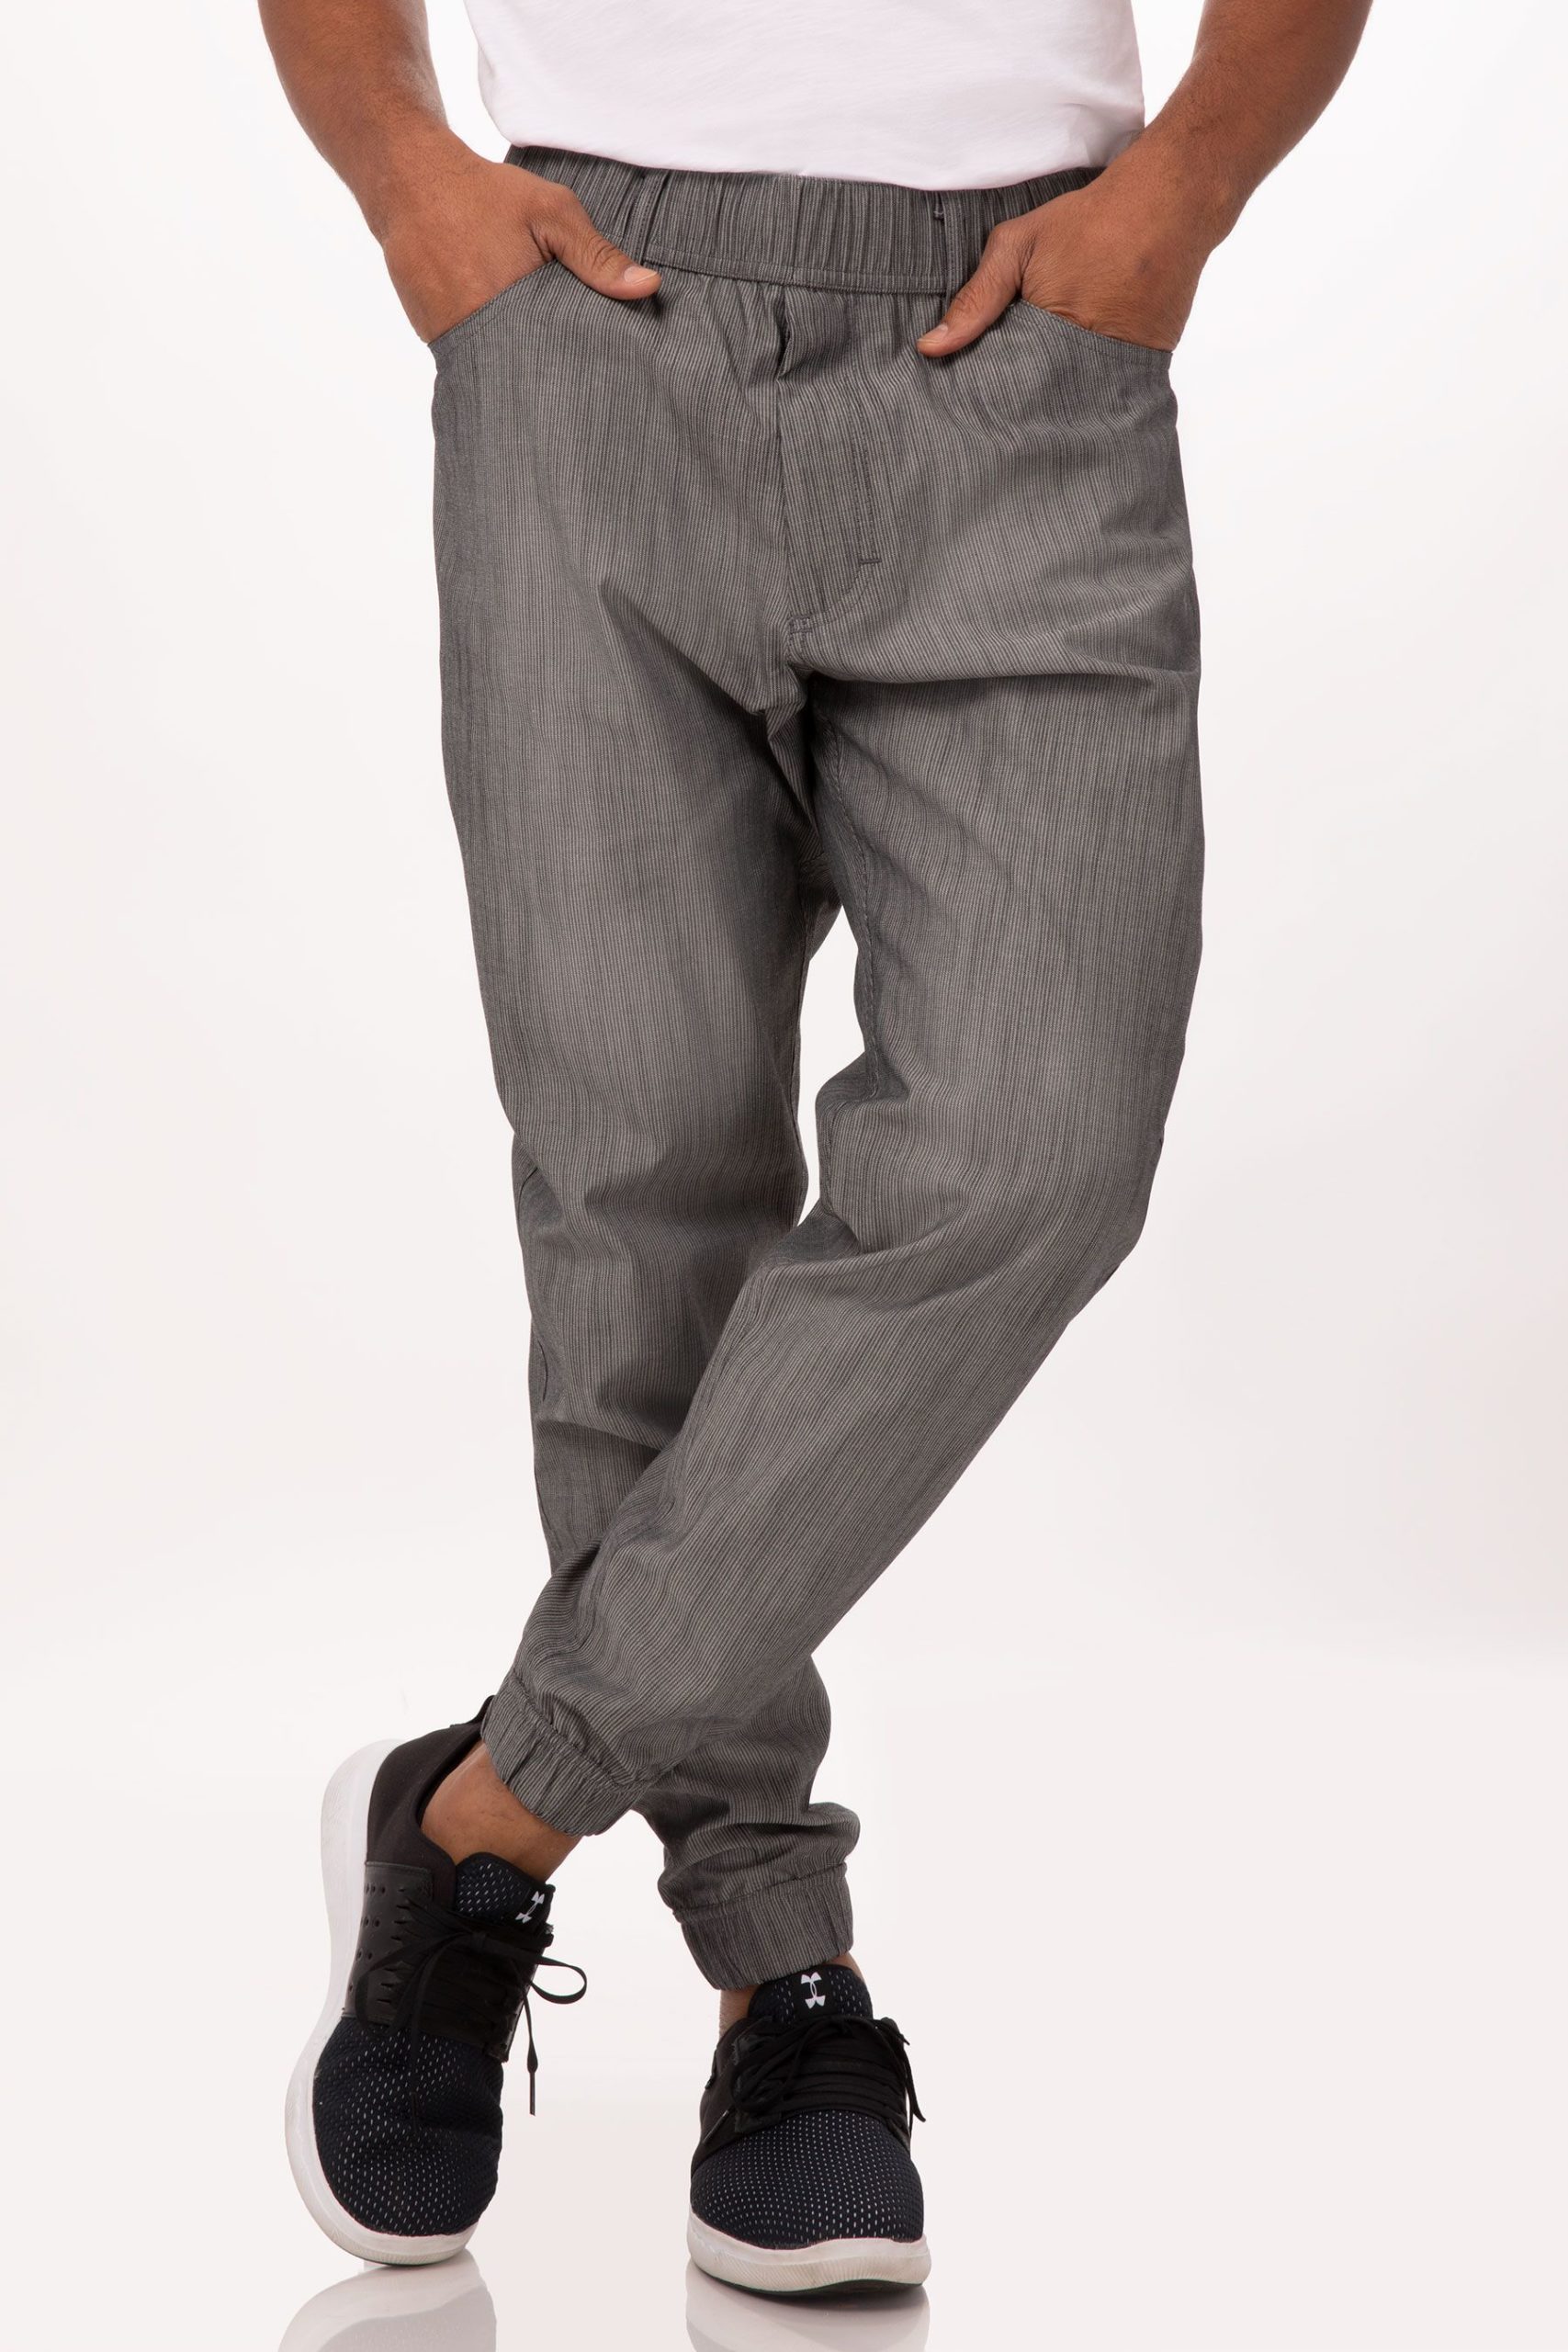 Pantalón Jogger Hombre Urban Premium